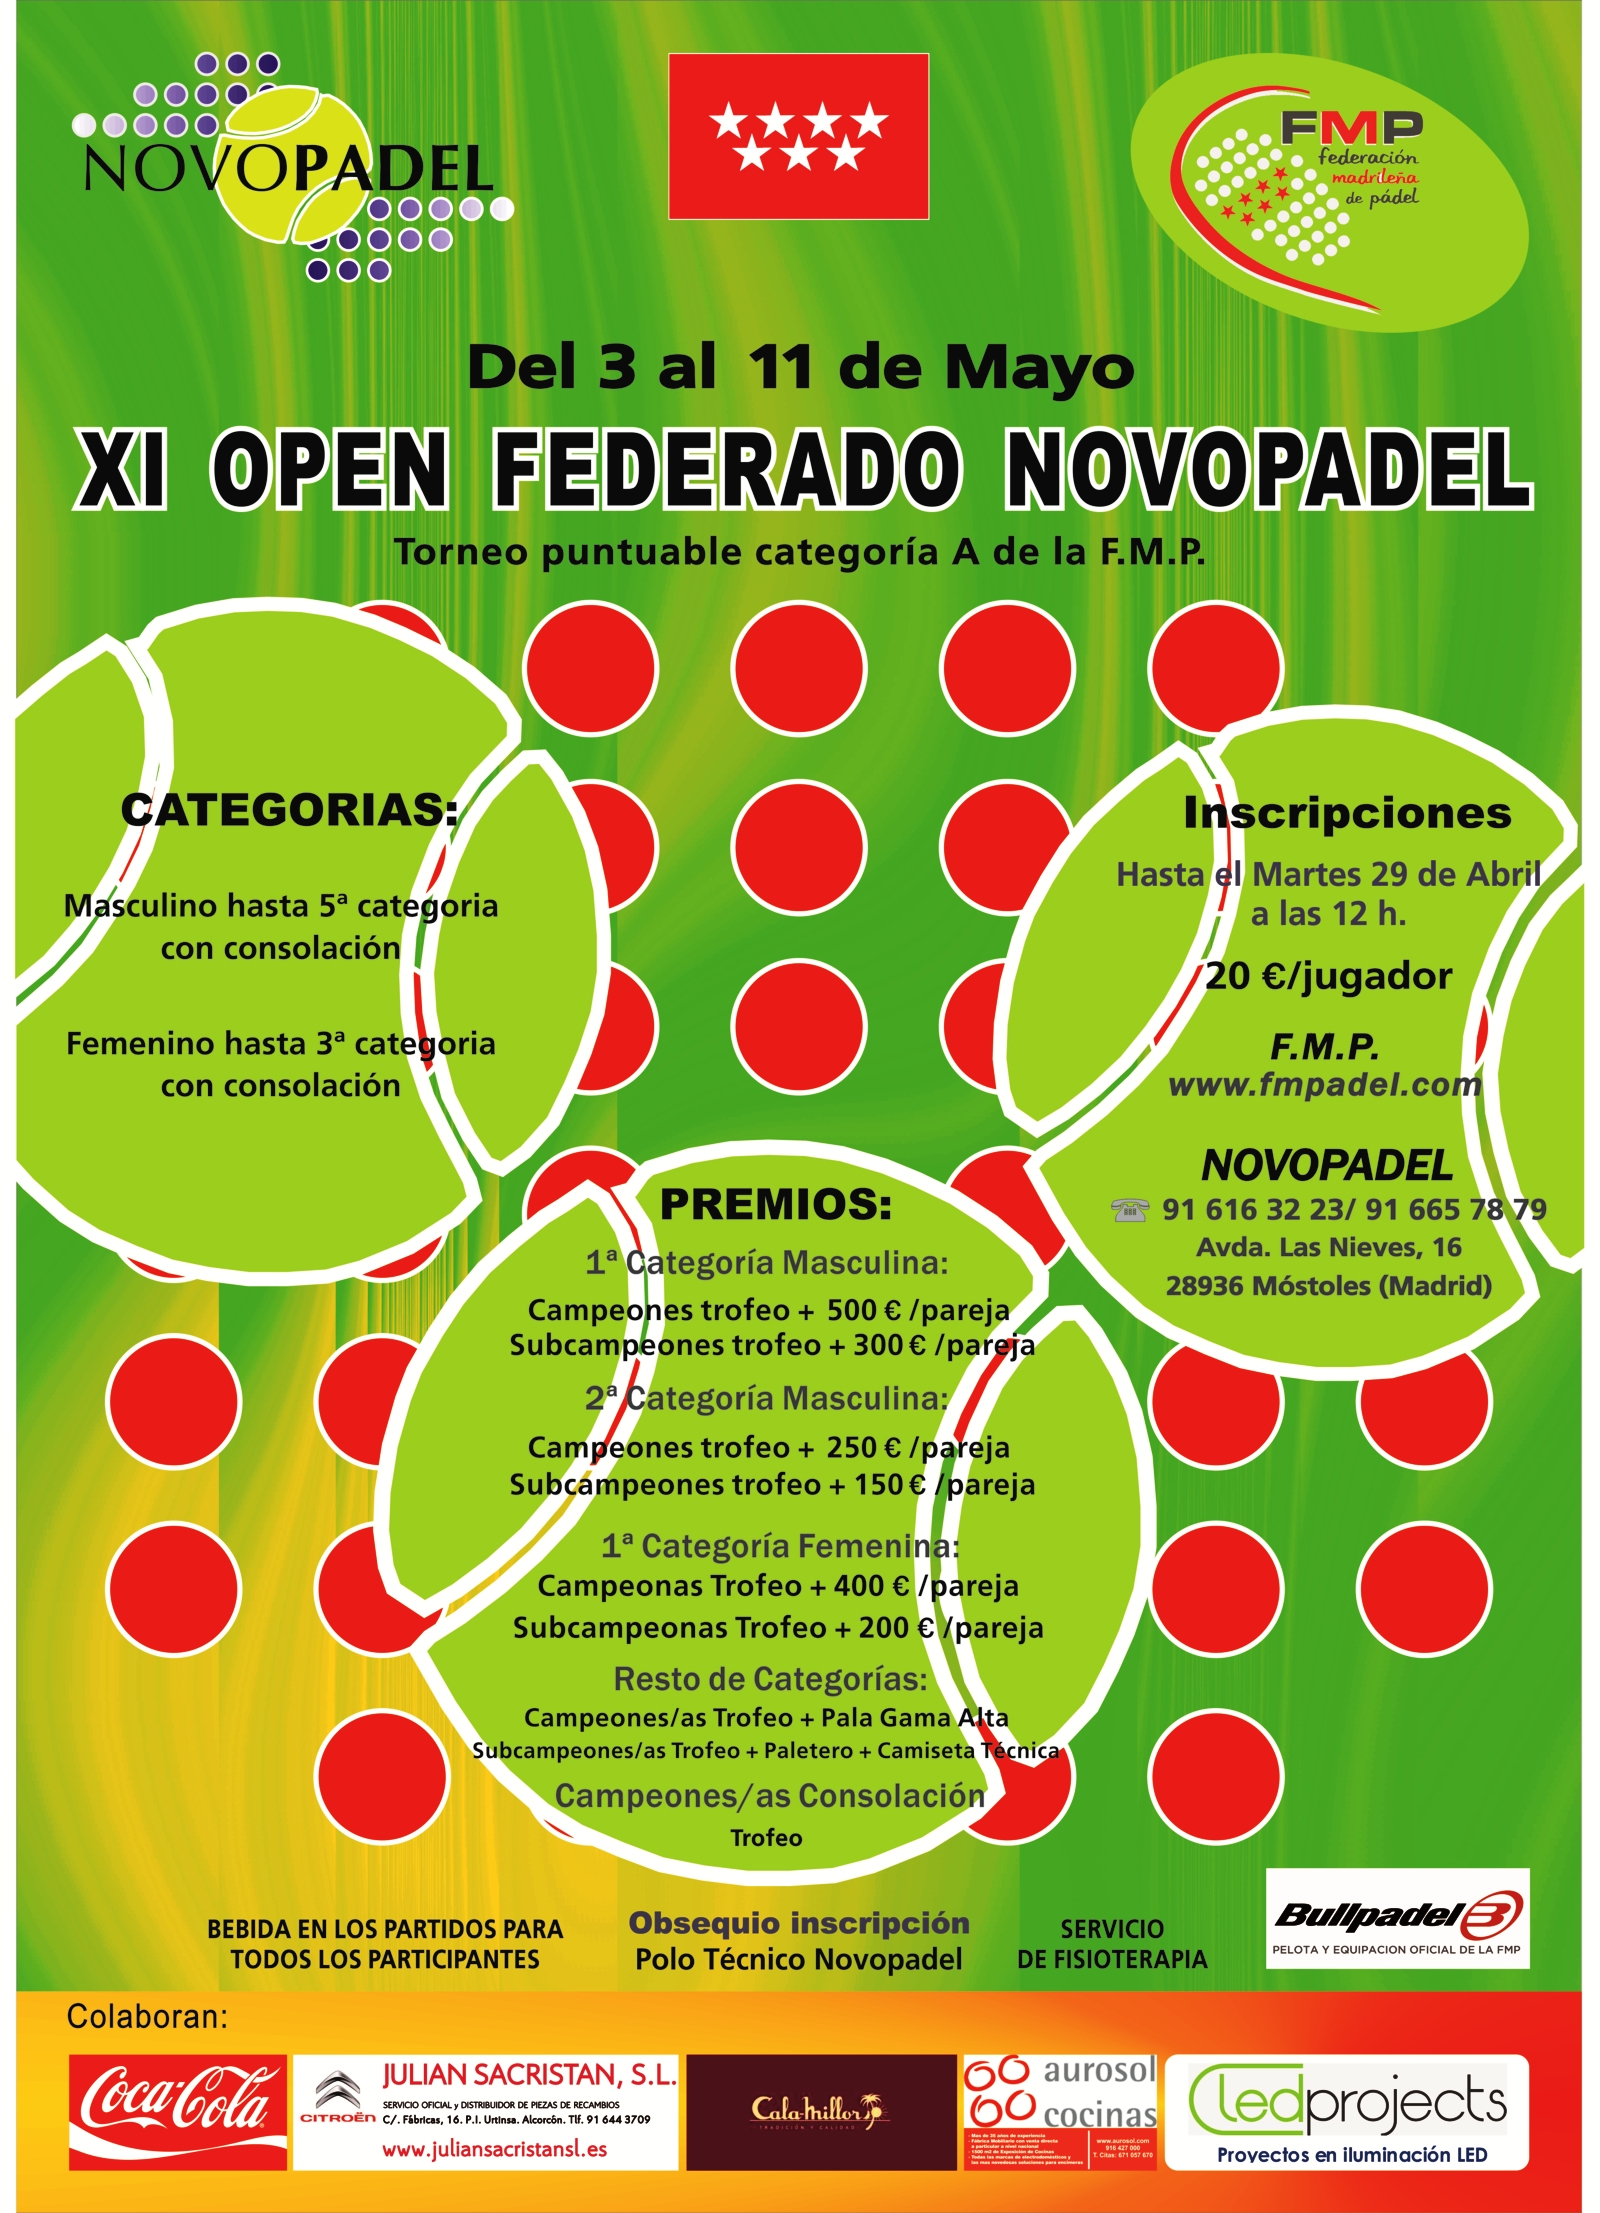 El XI Open Federado Novopadel comienza este prximo mes de mayo